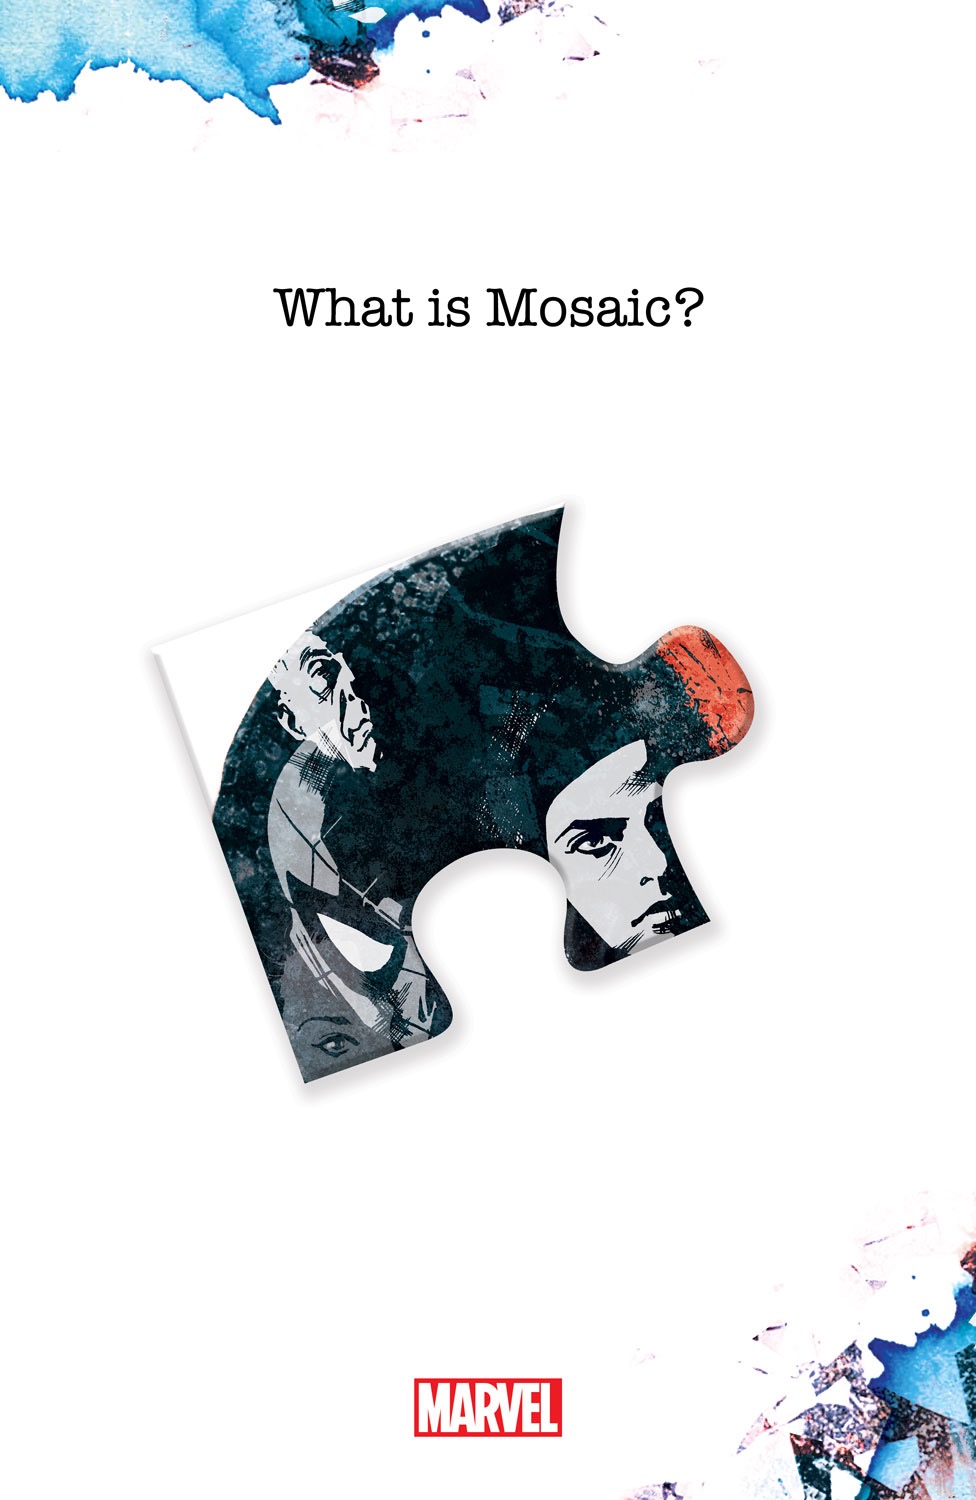 MOSAIC_2.jpg